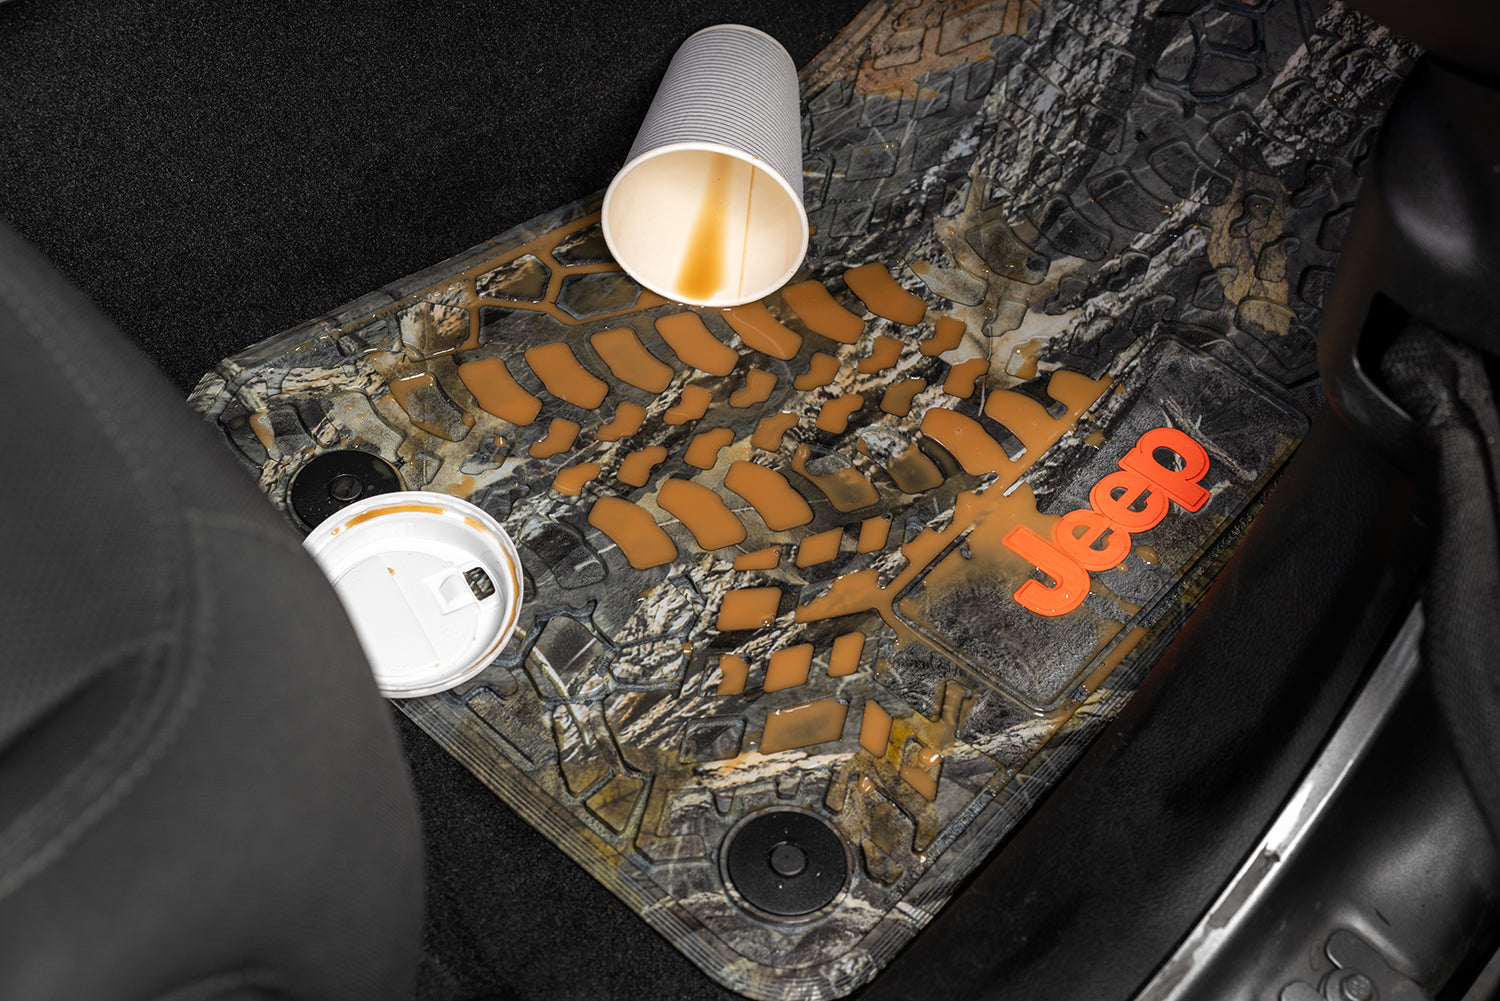 Jeep Floor Mats 14-18 Jeep Wrangler JK 2 Dr 2 Piece Tire Tread/Scorched Earth Scene w/ Rubicon Insert - Cyberflage w/ White Insert FlexTread